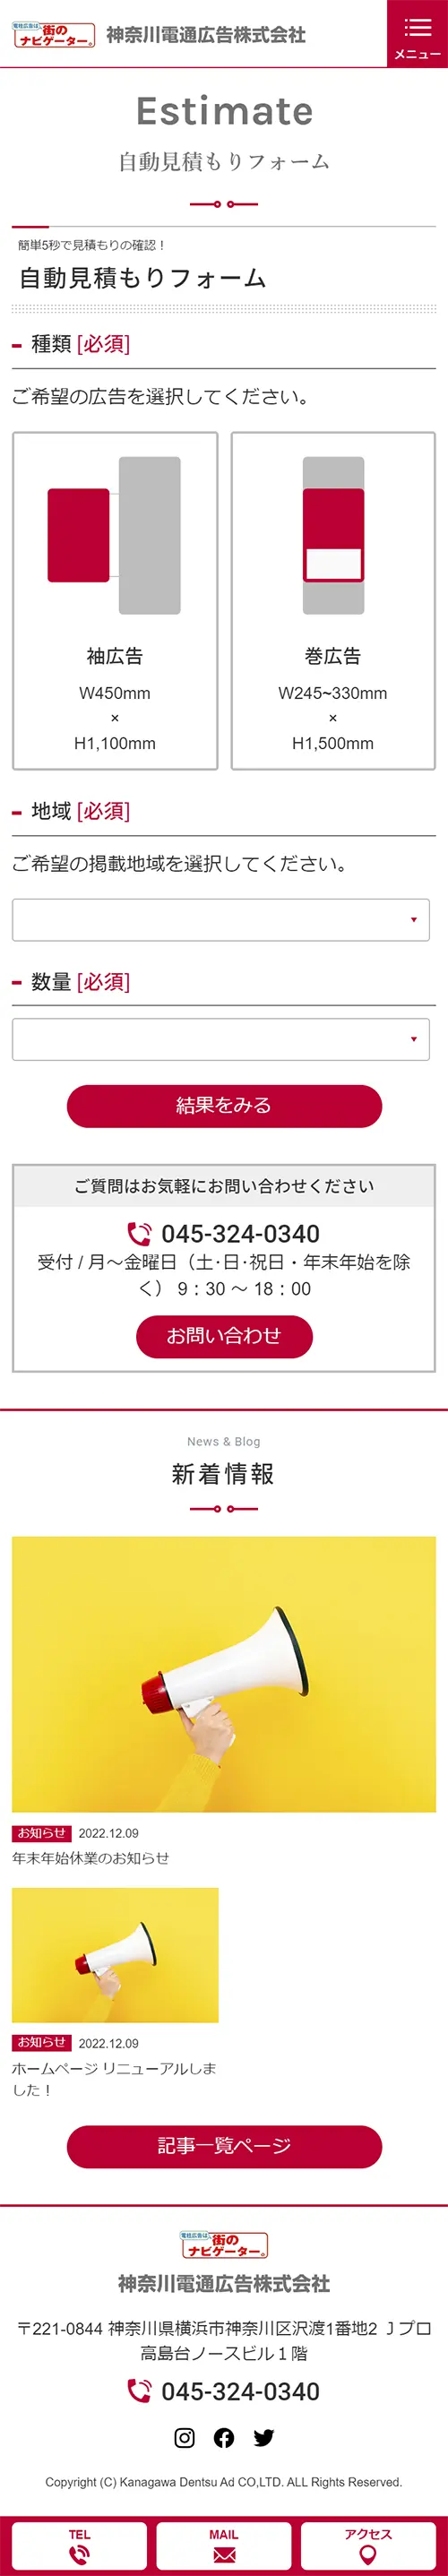 [神奈川電通広告/ 広告業] 自動見積もりフォームページ